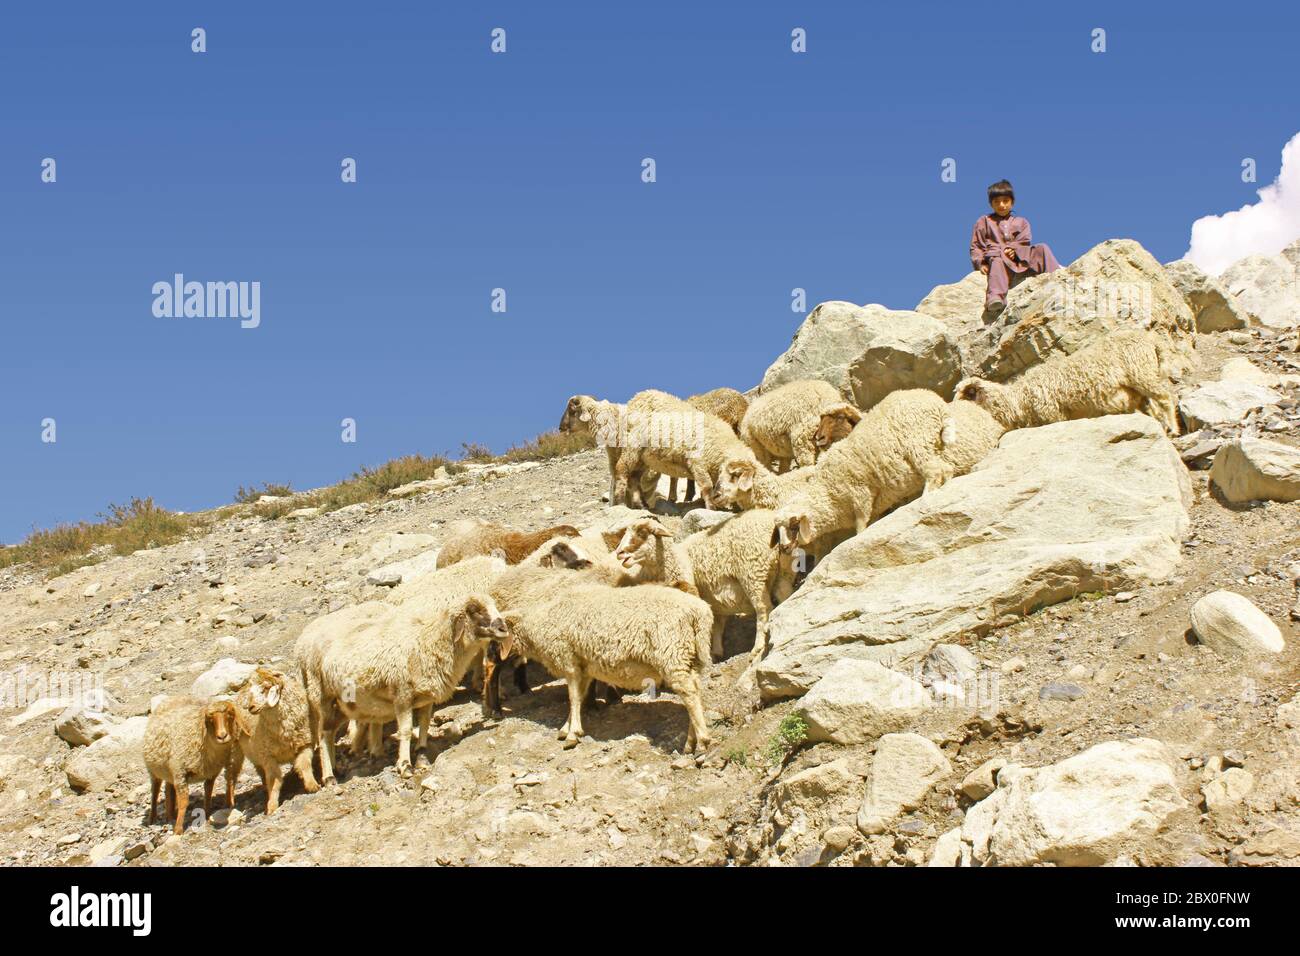 Child labor - shepherd child sitting on a rock on mountain in swat, KPK, Pakistan Stock Photo